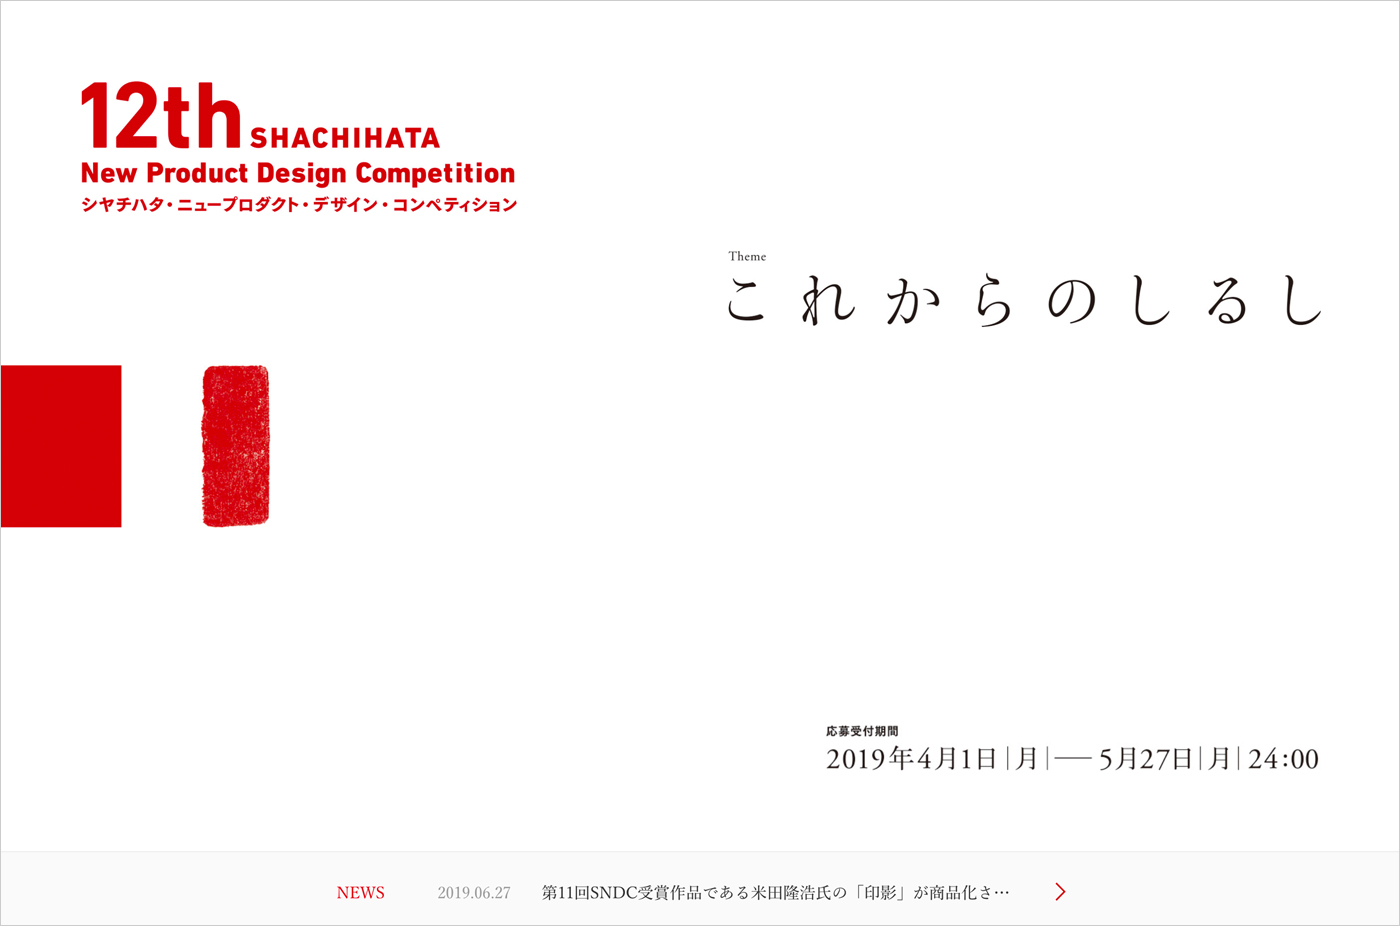 12th SHACHIHATA New Product Design Competition シヤチハタ・ニュープロダクト・デザイン・コンペティションウェブサイトの画面キャプチャ画像